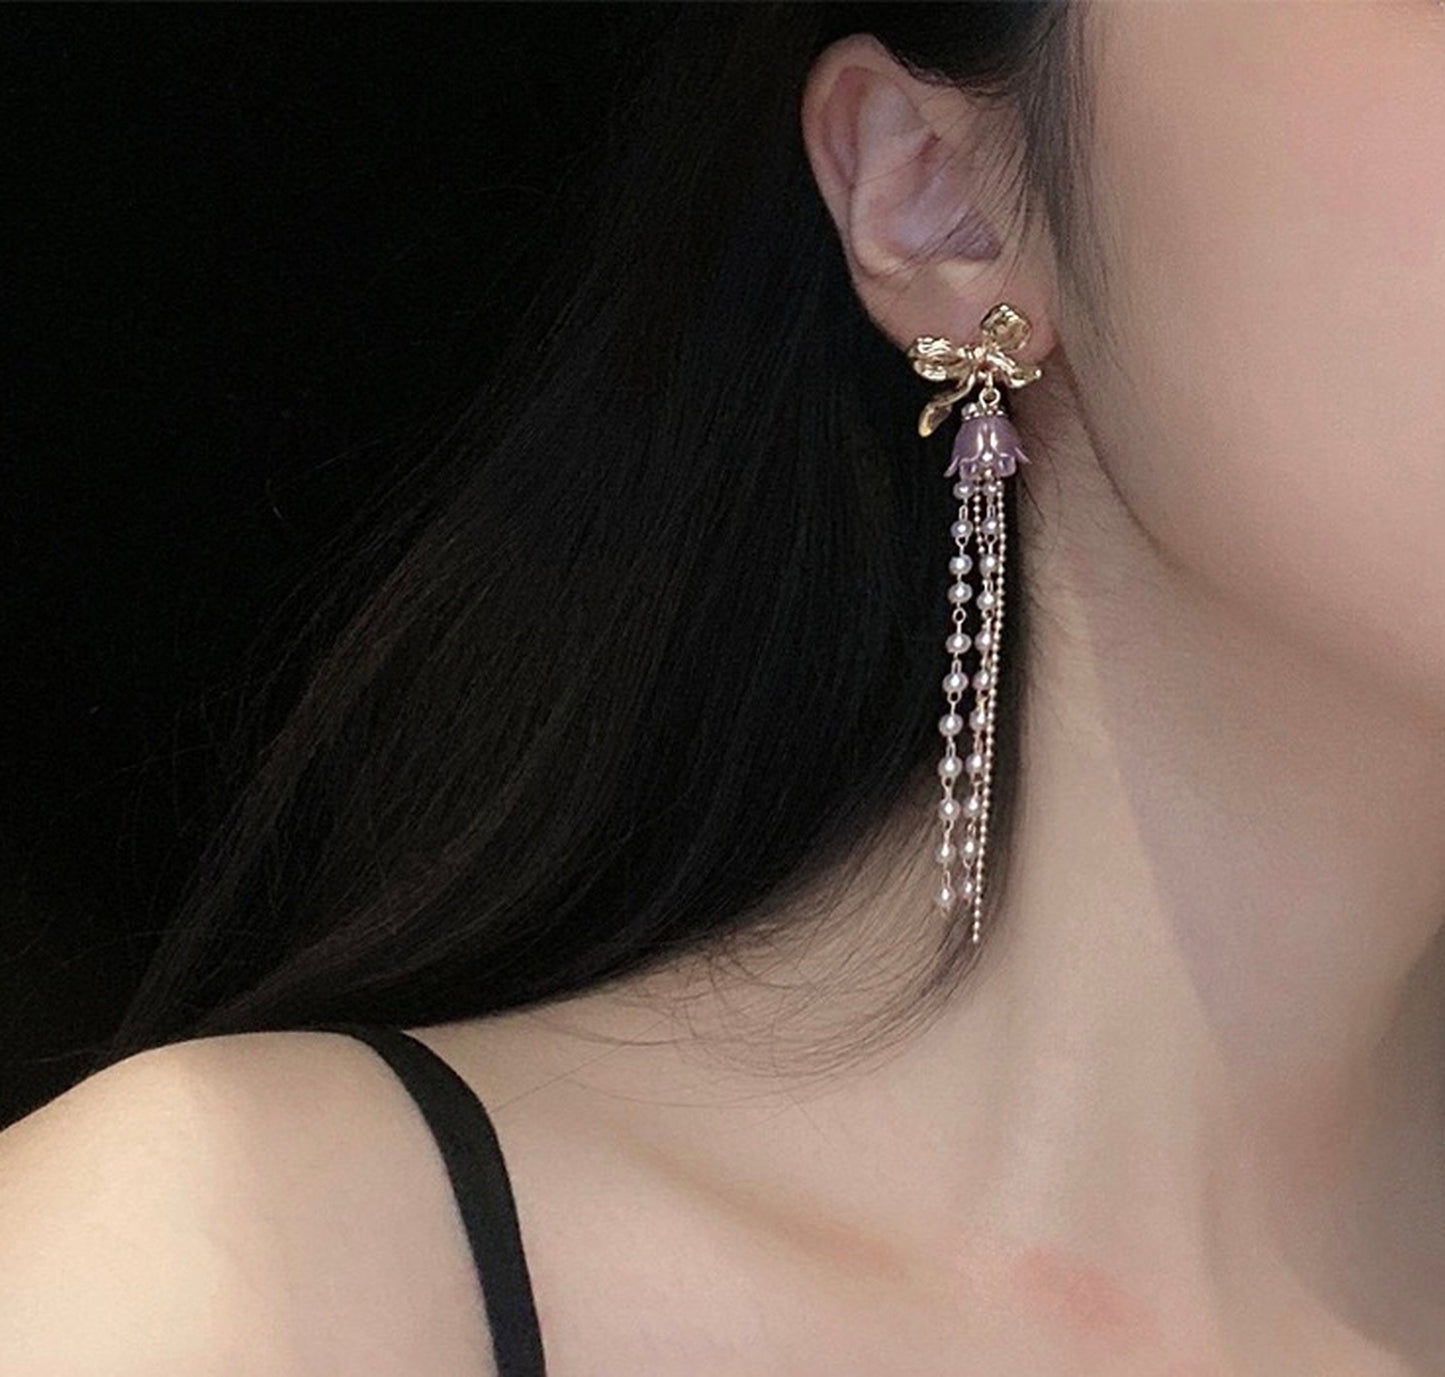 Purple flower earrings, Gold bow ribbon earrings, Long pearl drop earrings, Multi layer tassel earrings, Girly princess party earrings, Gift